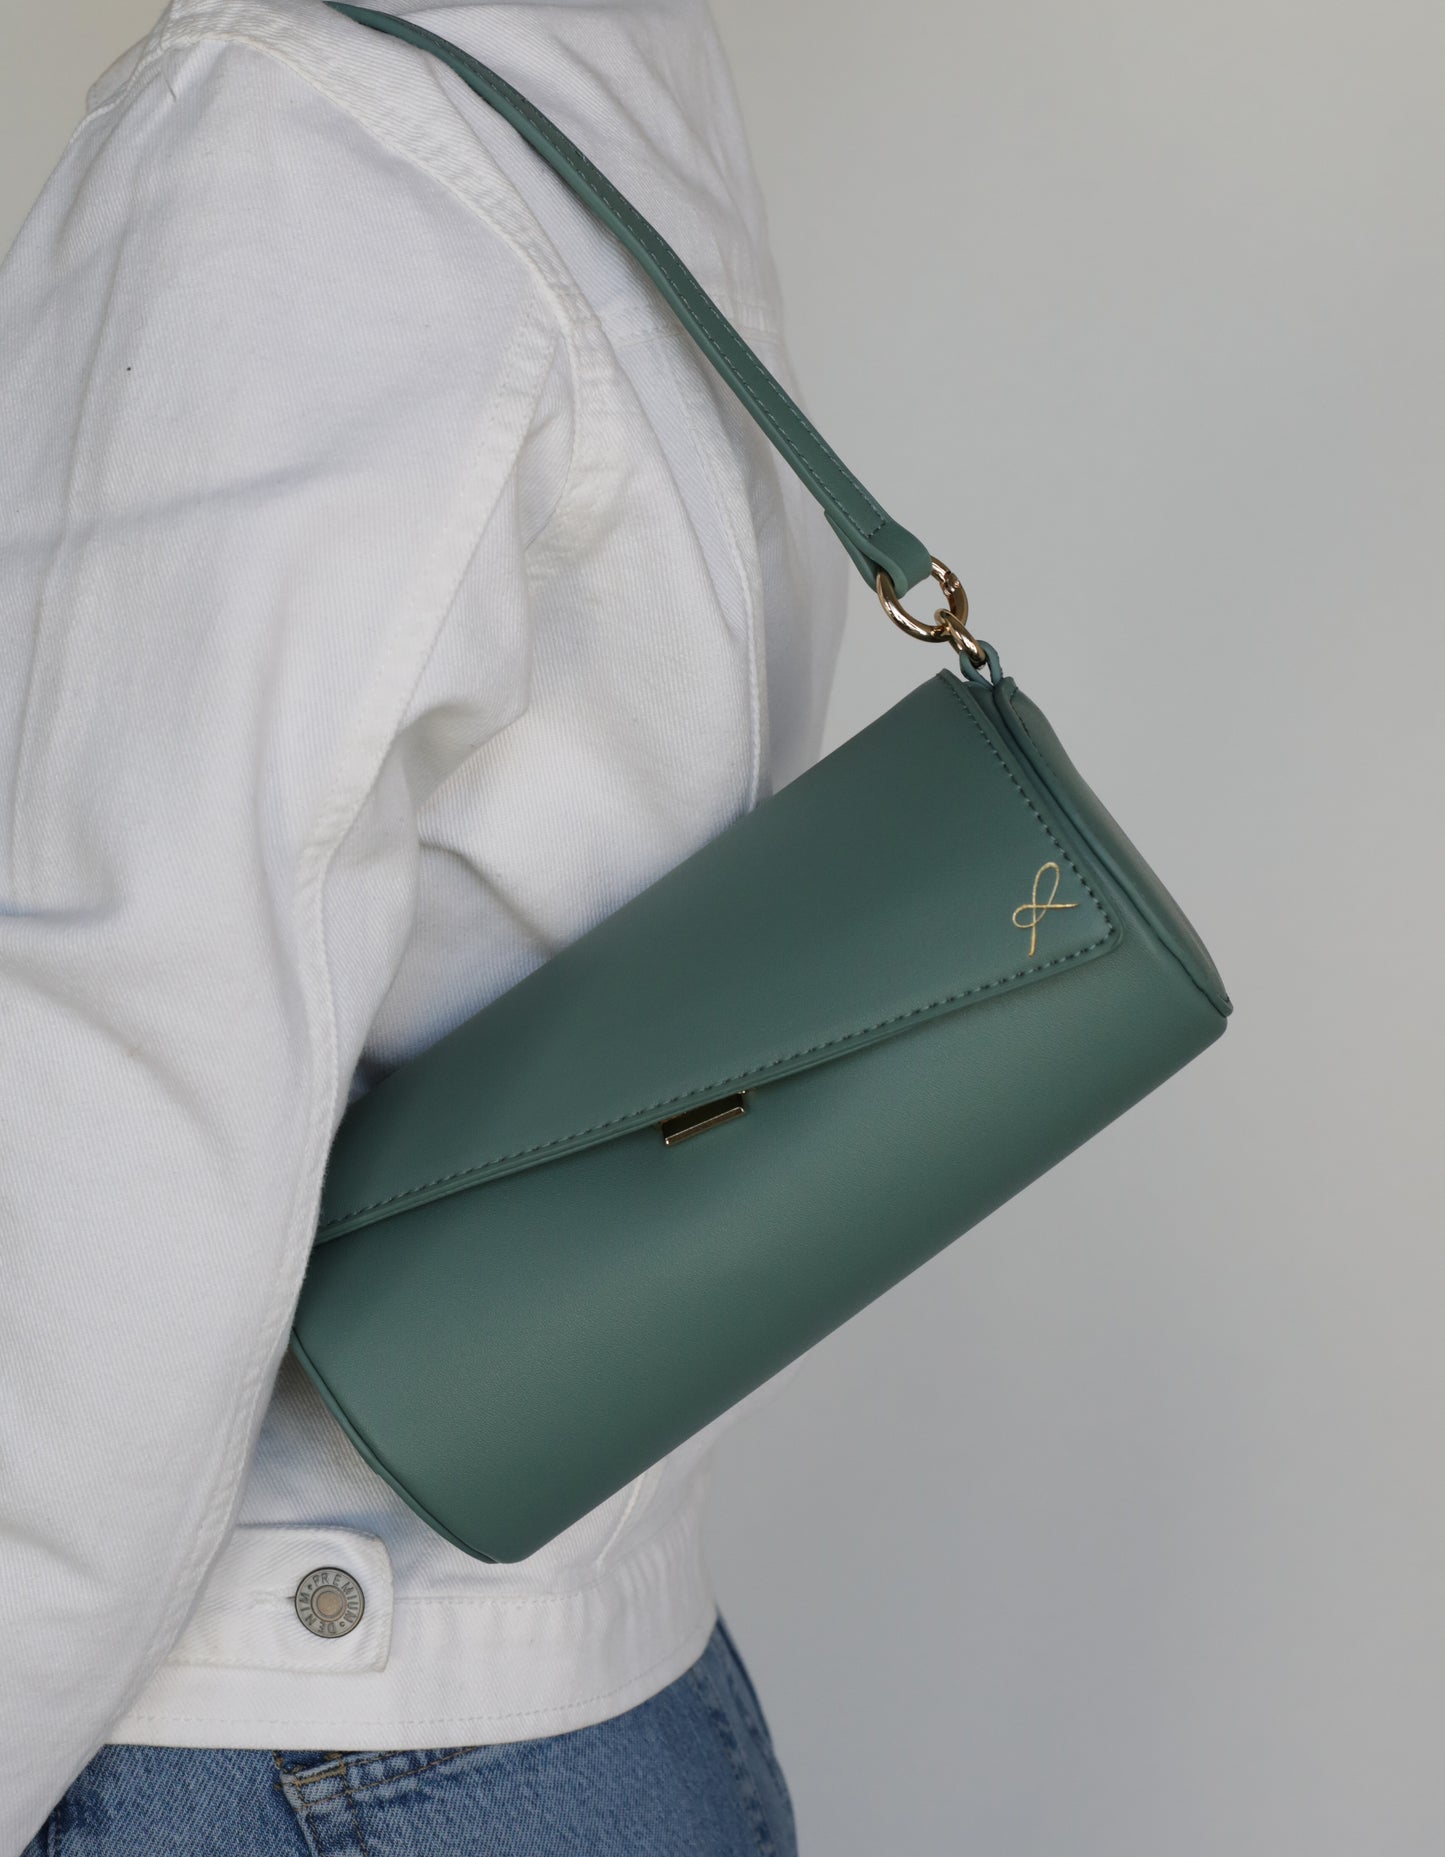 Cylinder Shaped Handbag in the color Sage. Bag shown with short strap